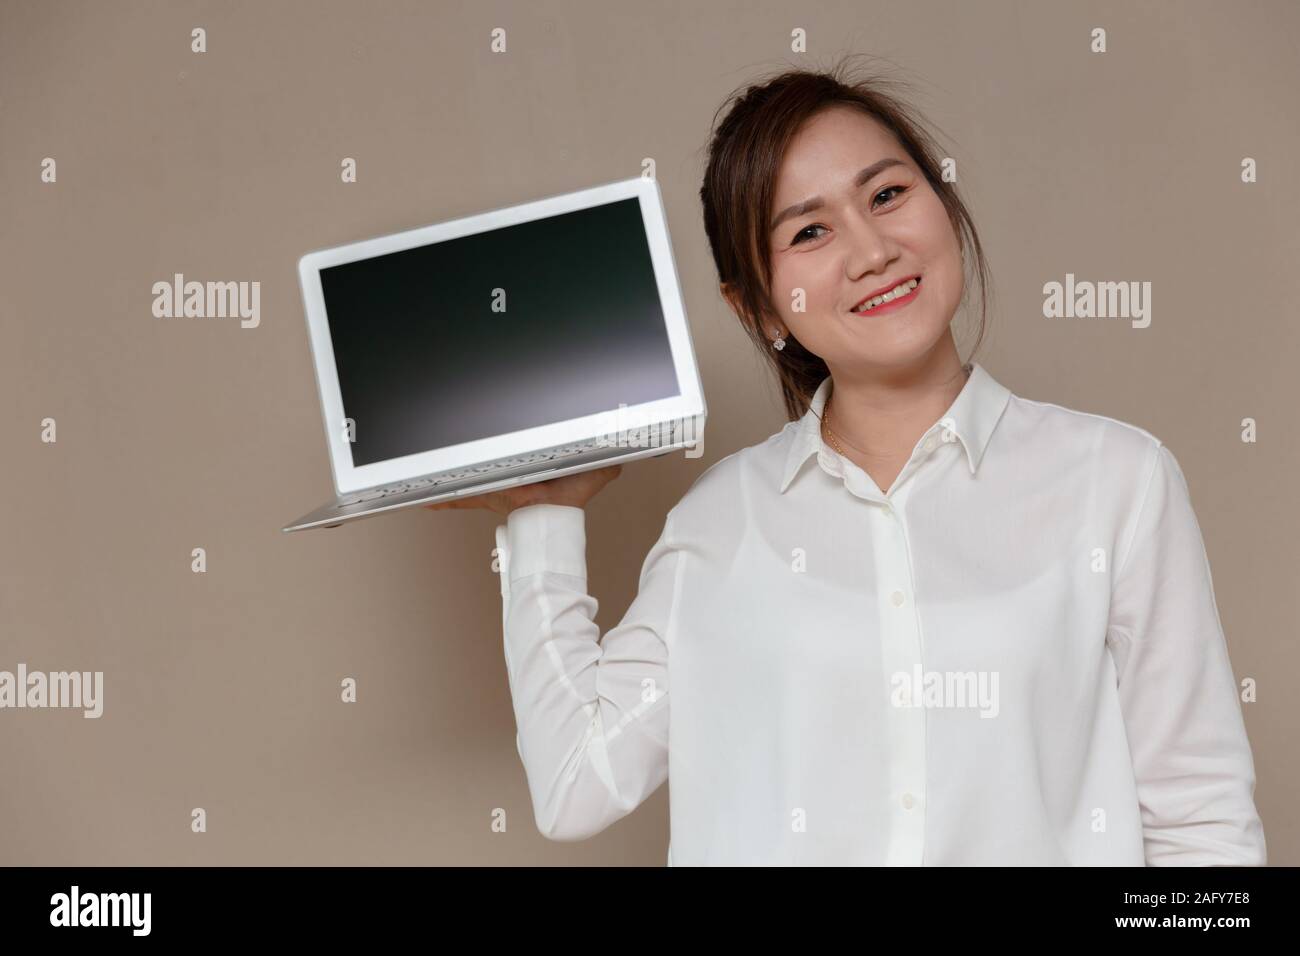 Asiatische Frau lächelnd einzigen Griff computer Laptop für die neuen dünnen und leichten Laptop Computer. Stockfoto